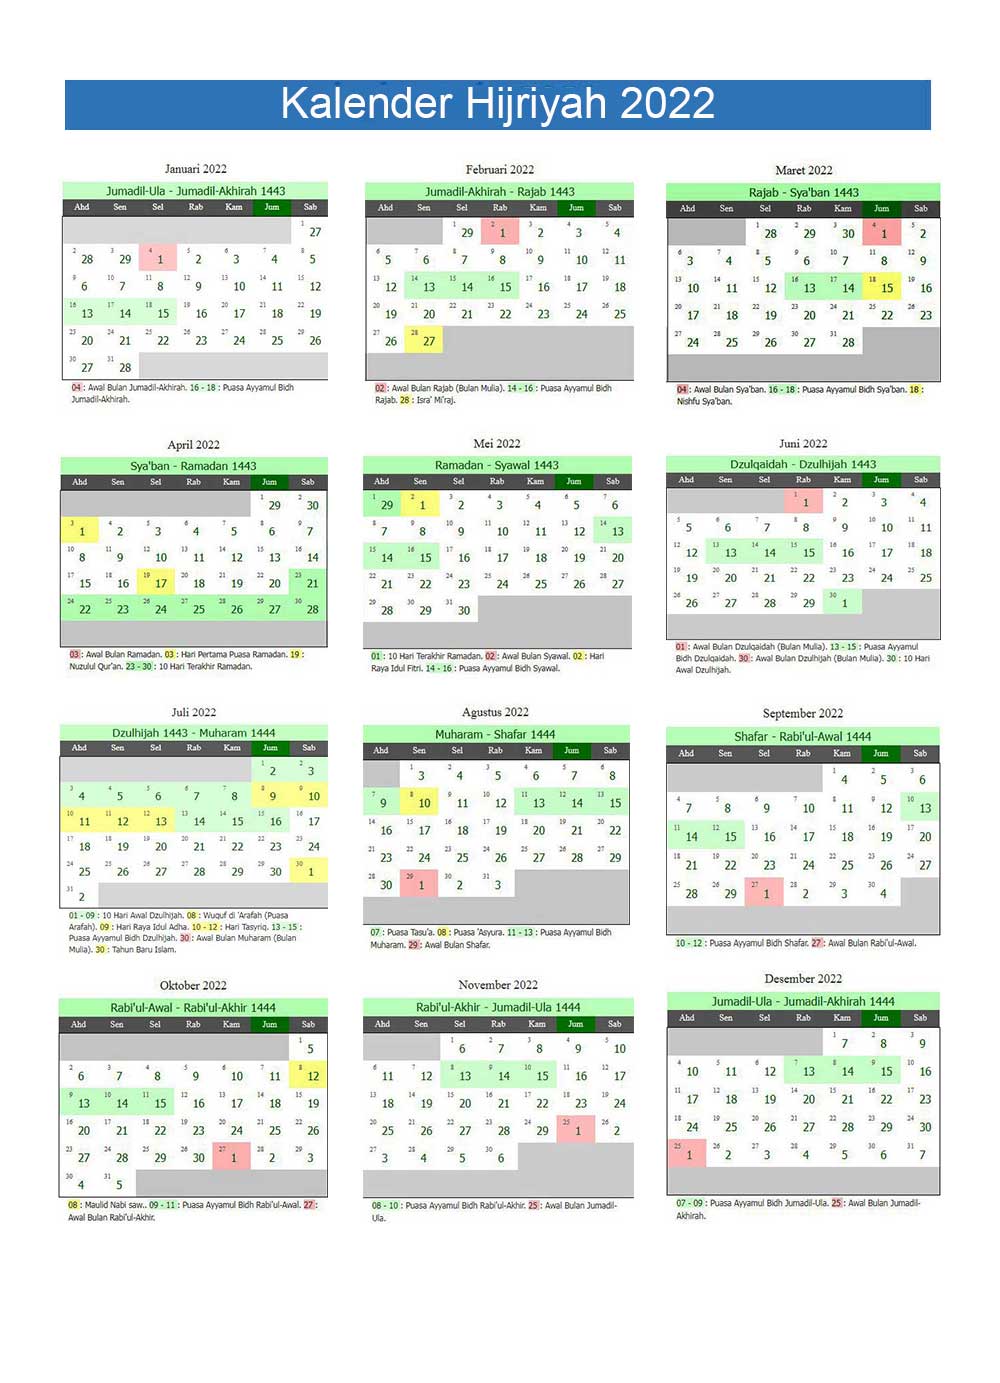 Kalender Hijriyah 2022 (1443H – 1444H) Lengkap Tanggal 12 Bulan